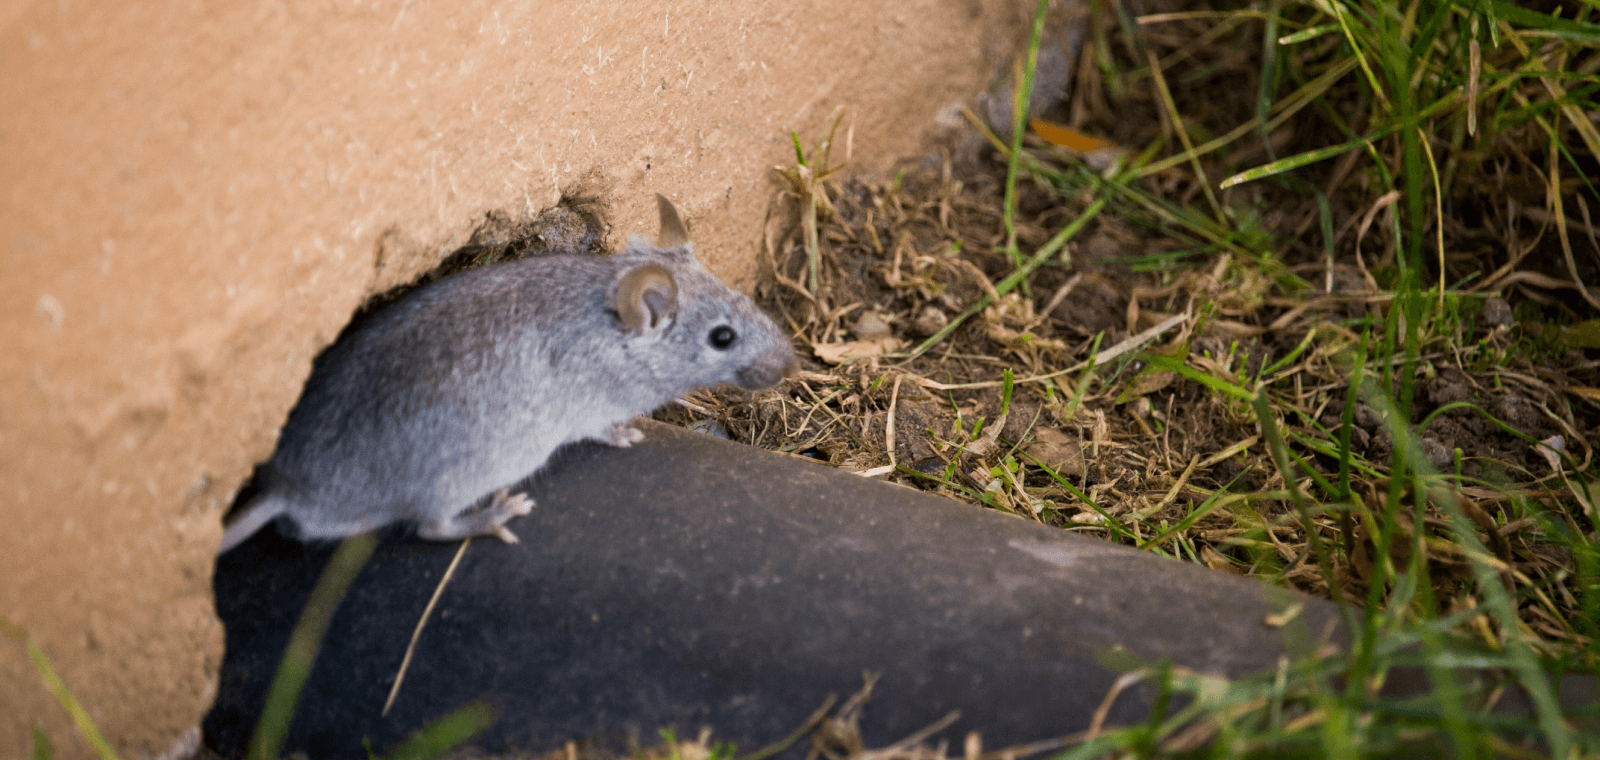 Piège à rat professionnel : est-il vraiment efficace ?